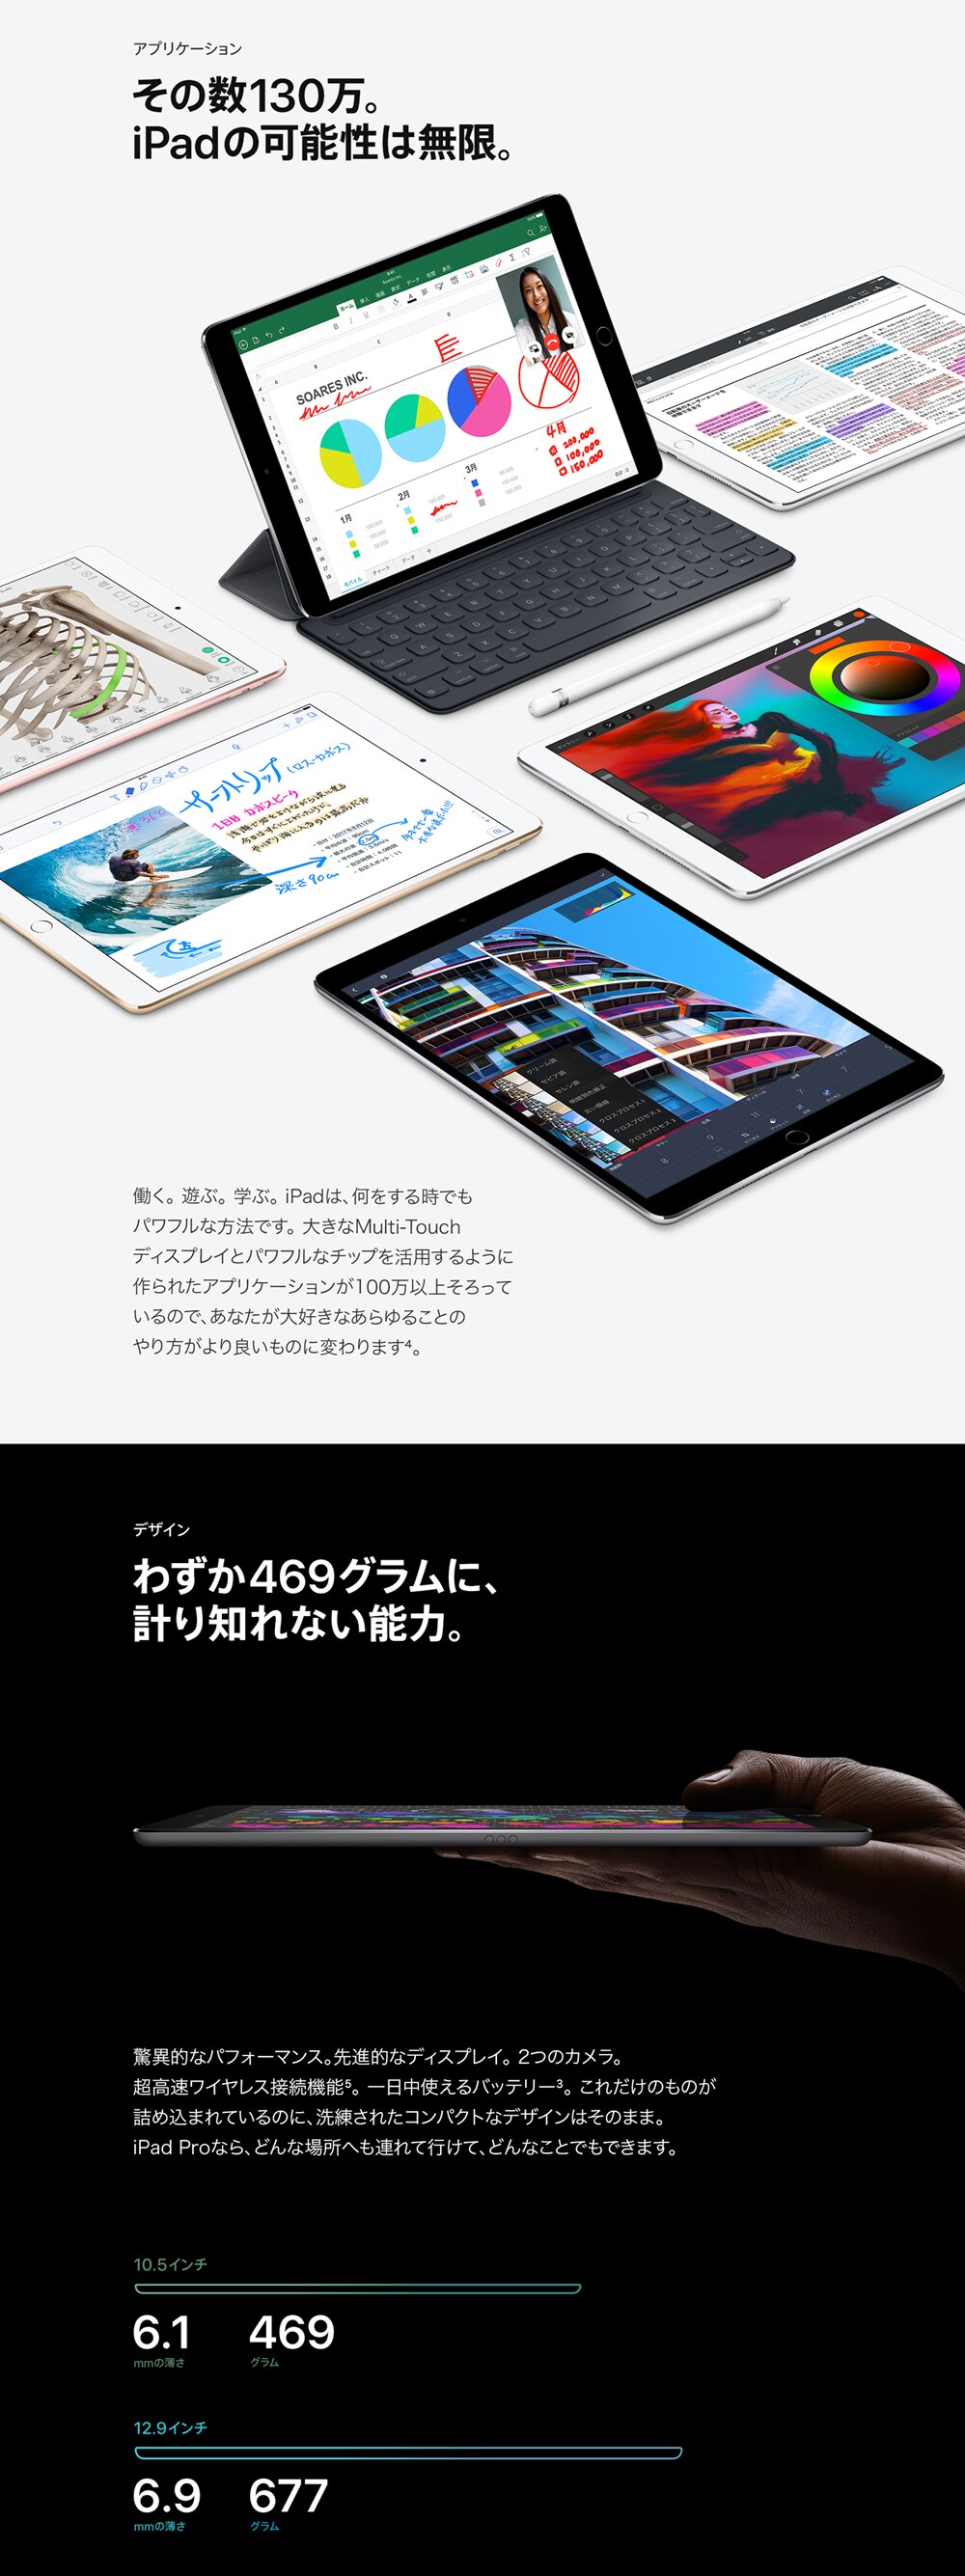 ヨドバシ.com - Apple iPad Pro すべてがもっとうまくできる。この一枚で。